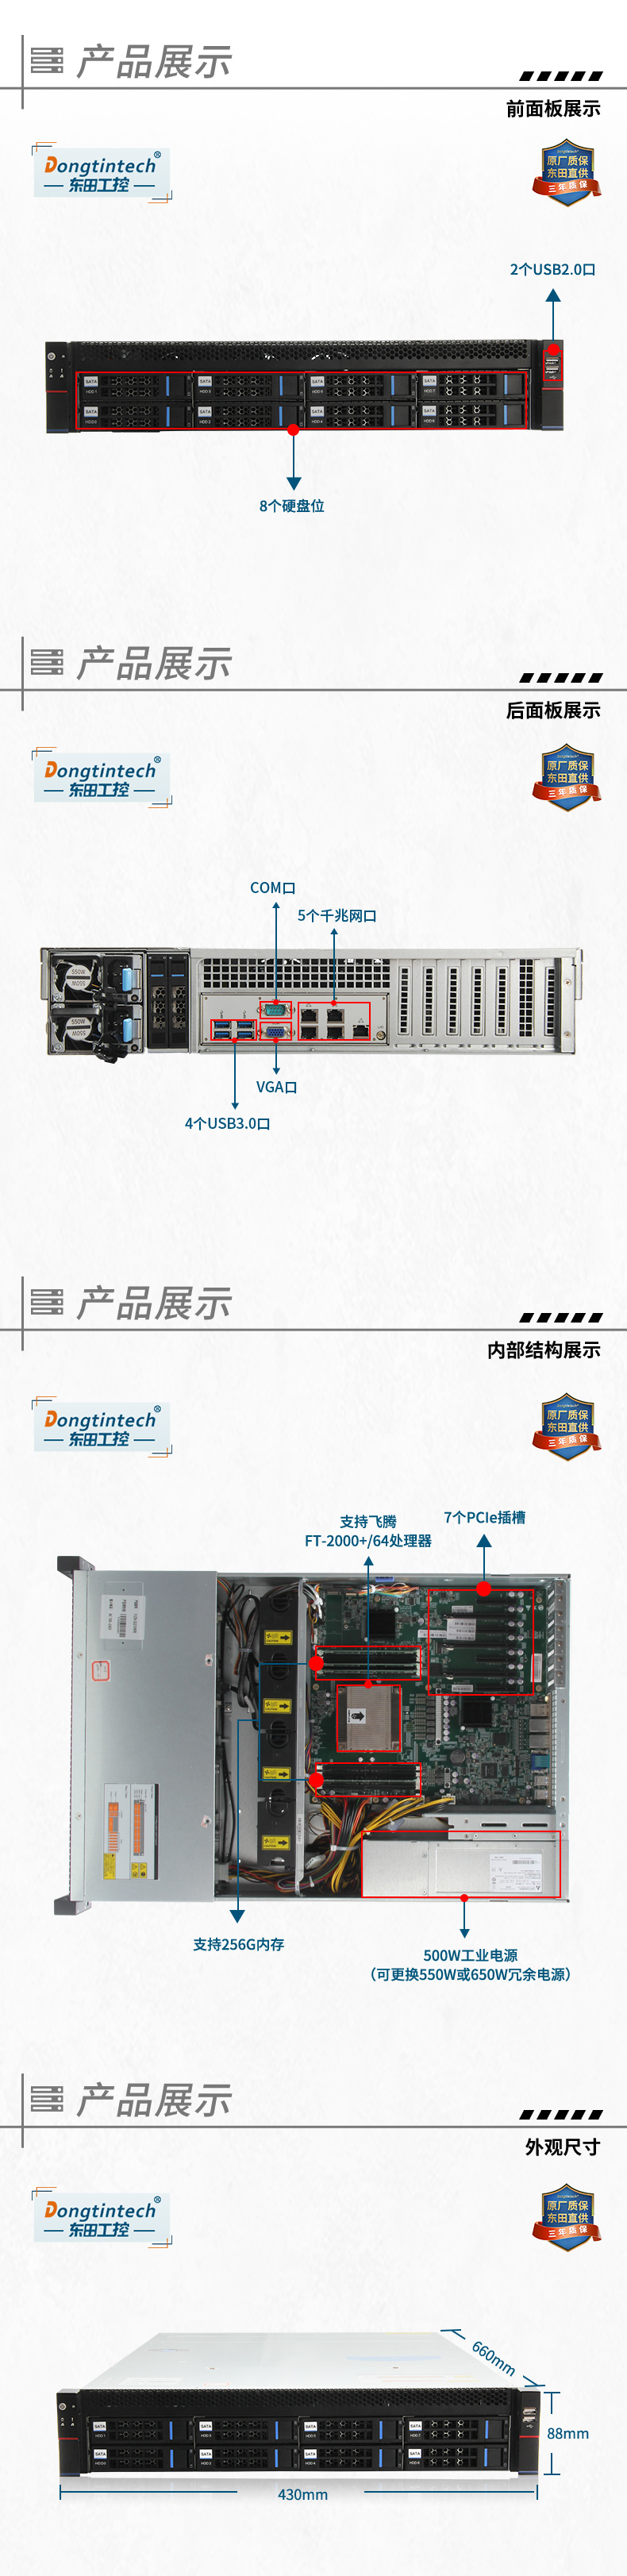 国产化服务器,国产飞腾CPU,DT-22260-FT2000.jpg